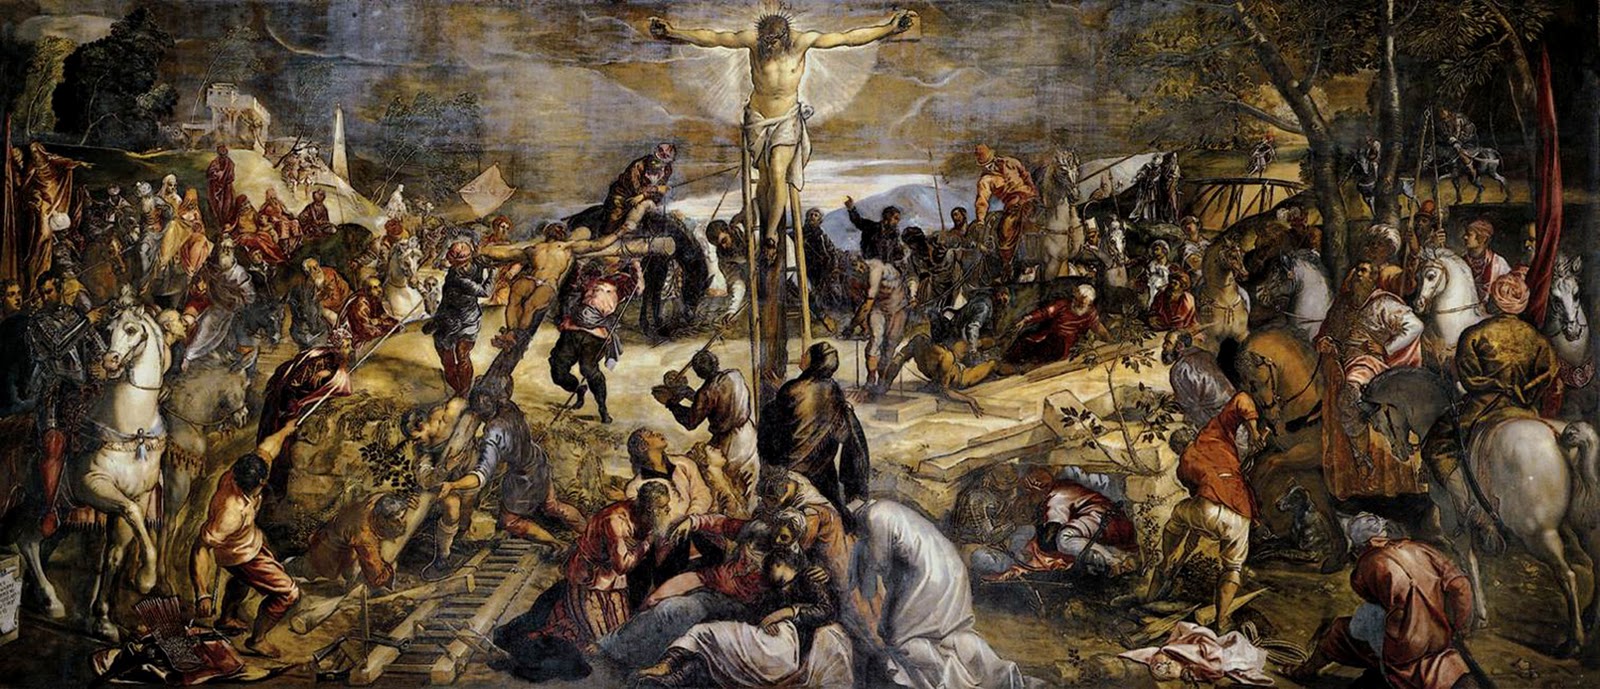 Ukrzyżowanie – obraz włoskiego malarza Jacopa Tintoretta